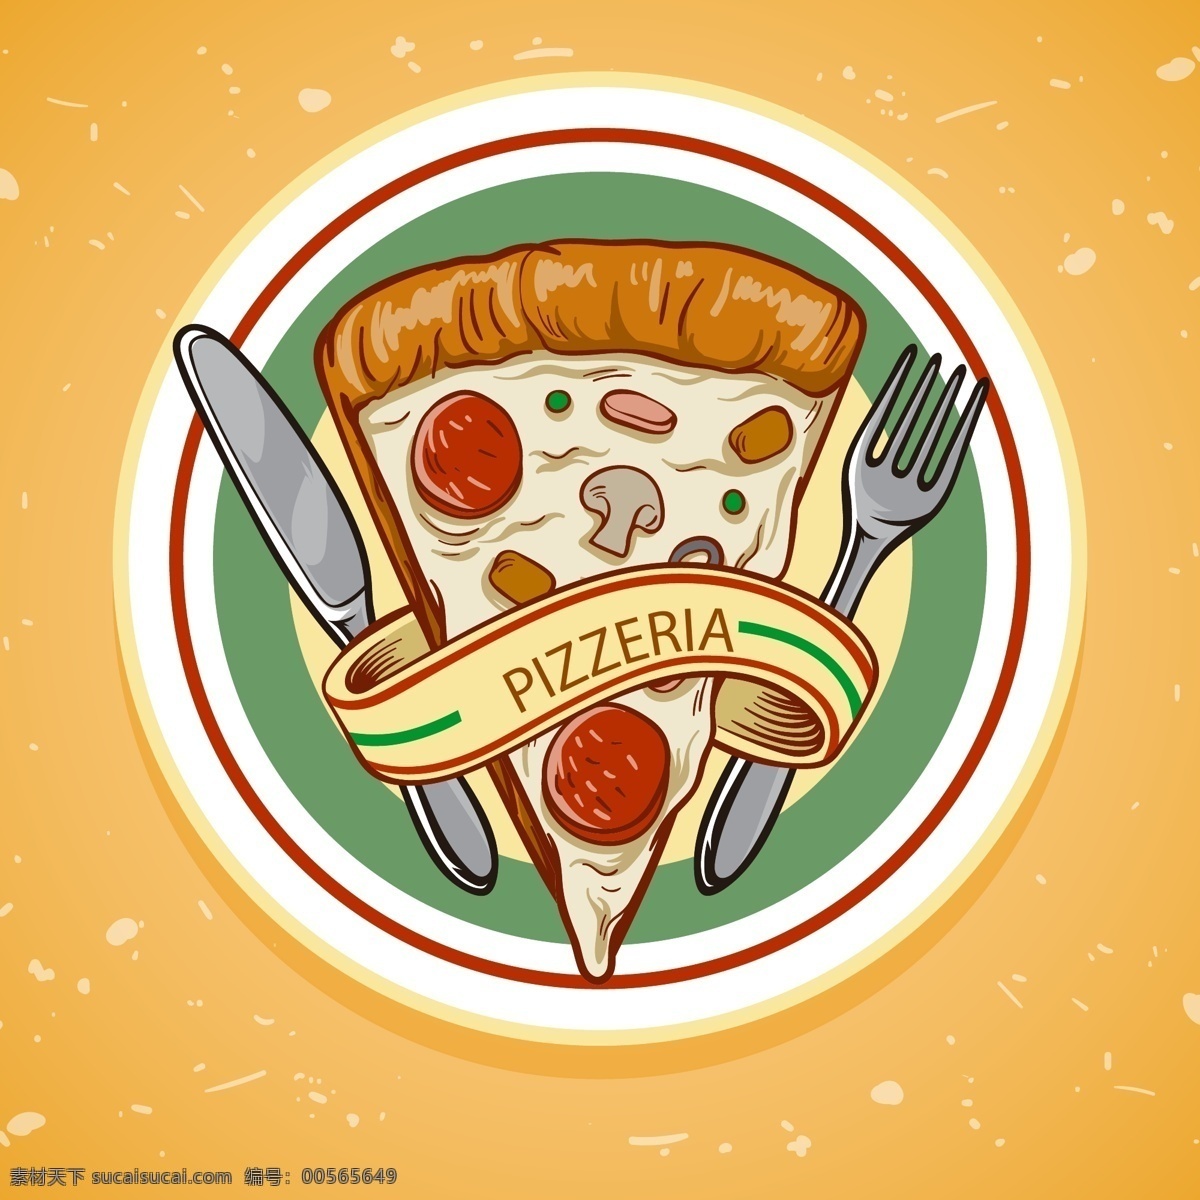 手绘 美味 披萨 插图 比萨 欧洲披萨 意大利披萨 pizza 中国披萨 披萨做法 美味披萨 美食 小吃 披萨海报 披萨展板 披萨文化 披萨促销 披萨西餐 披萨快餐 披萨加盟 披萨店 披萨必胜店 比萨披萨 披萨包装 披萨美食 西式披萨 披萨厨师 披萨插画 披萨广告 西式快餐美食